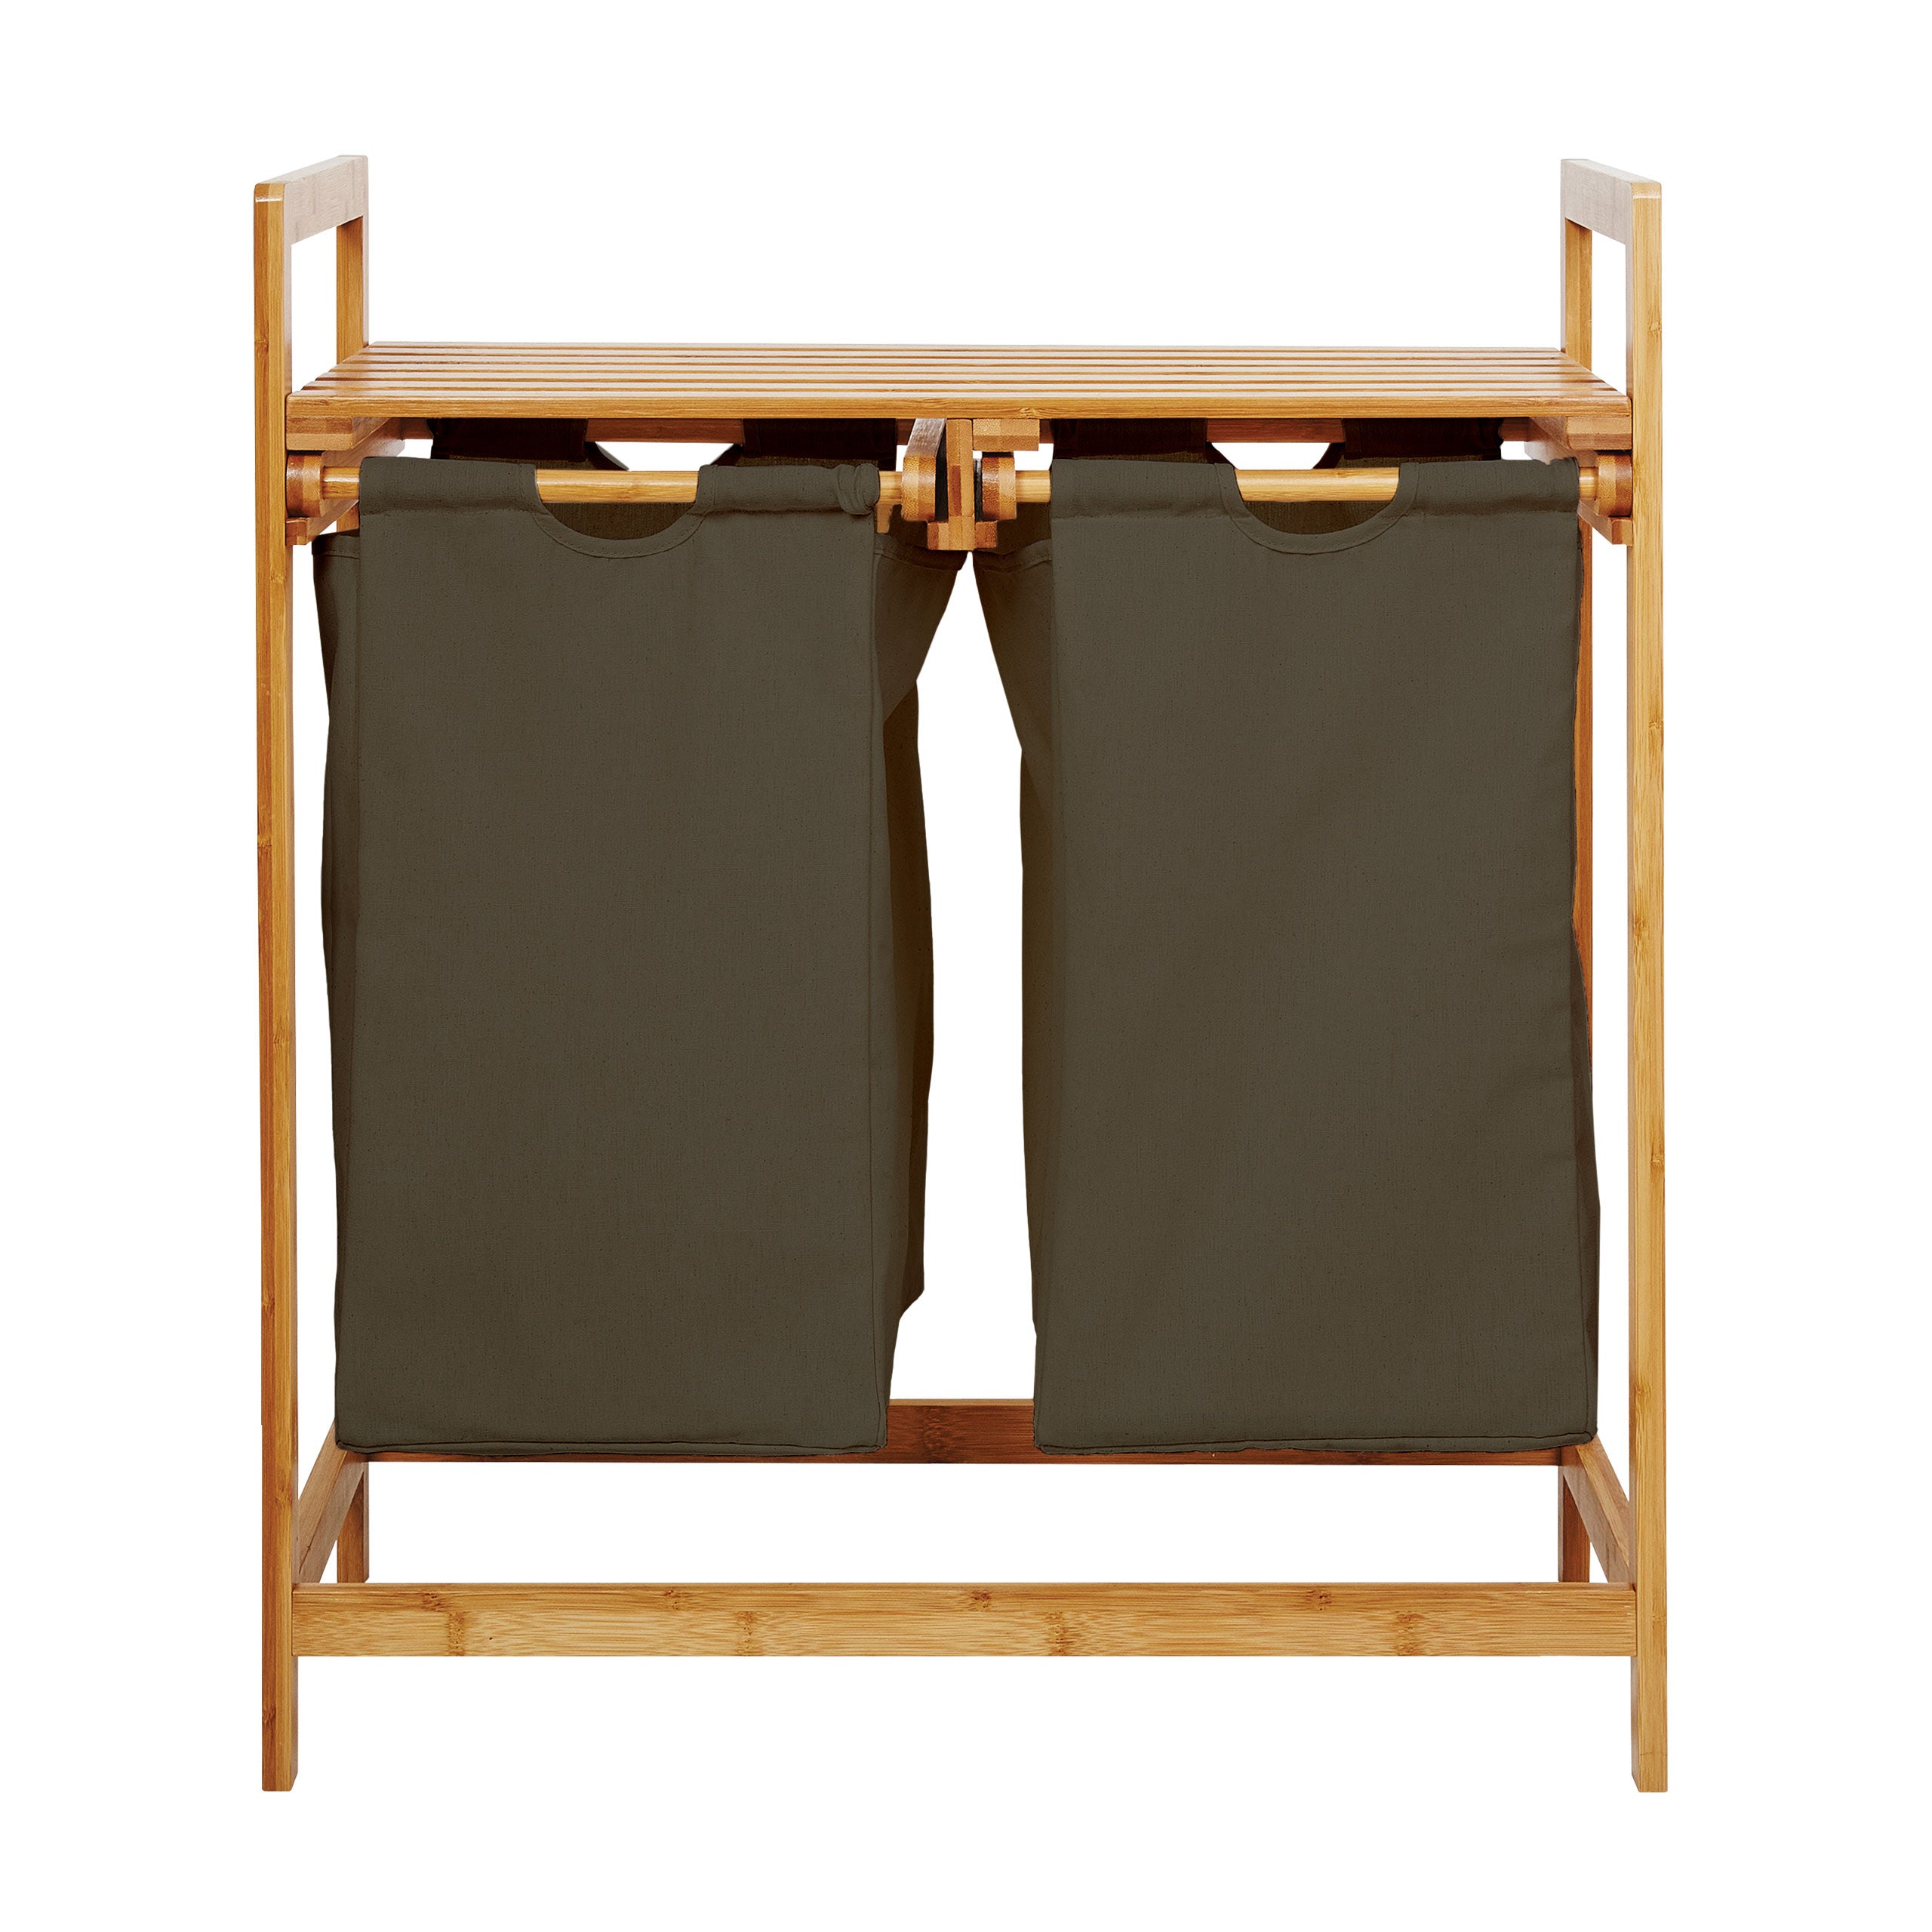 Bambus Wäschekorb mit 2 ausziehbaren Wäschesacken - 73 x 64 x 33 cm - Oliv